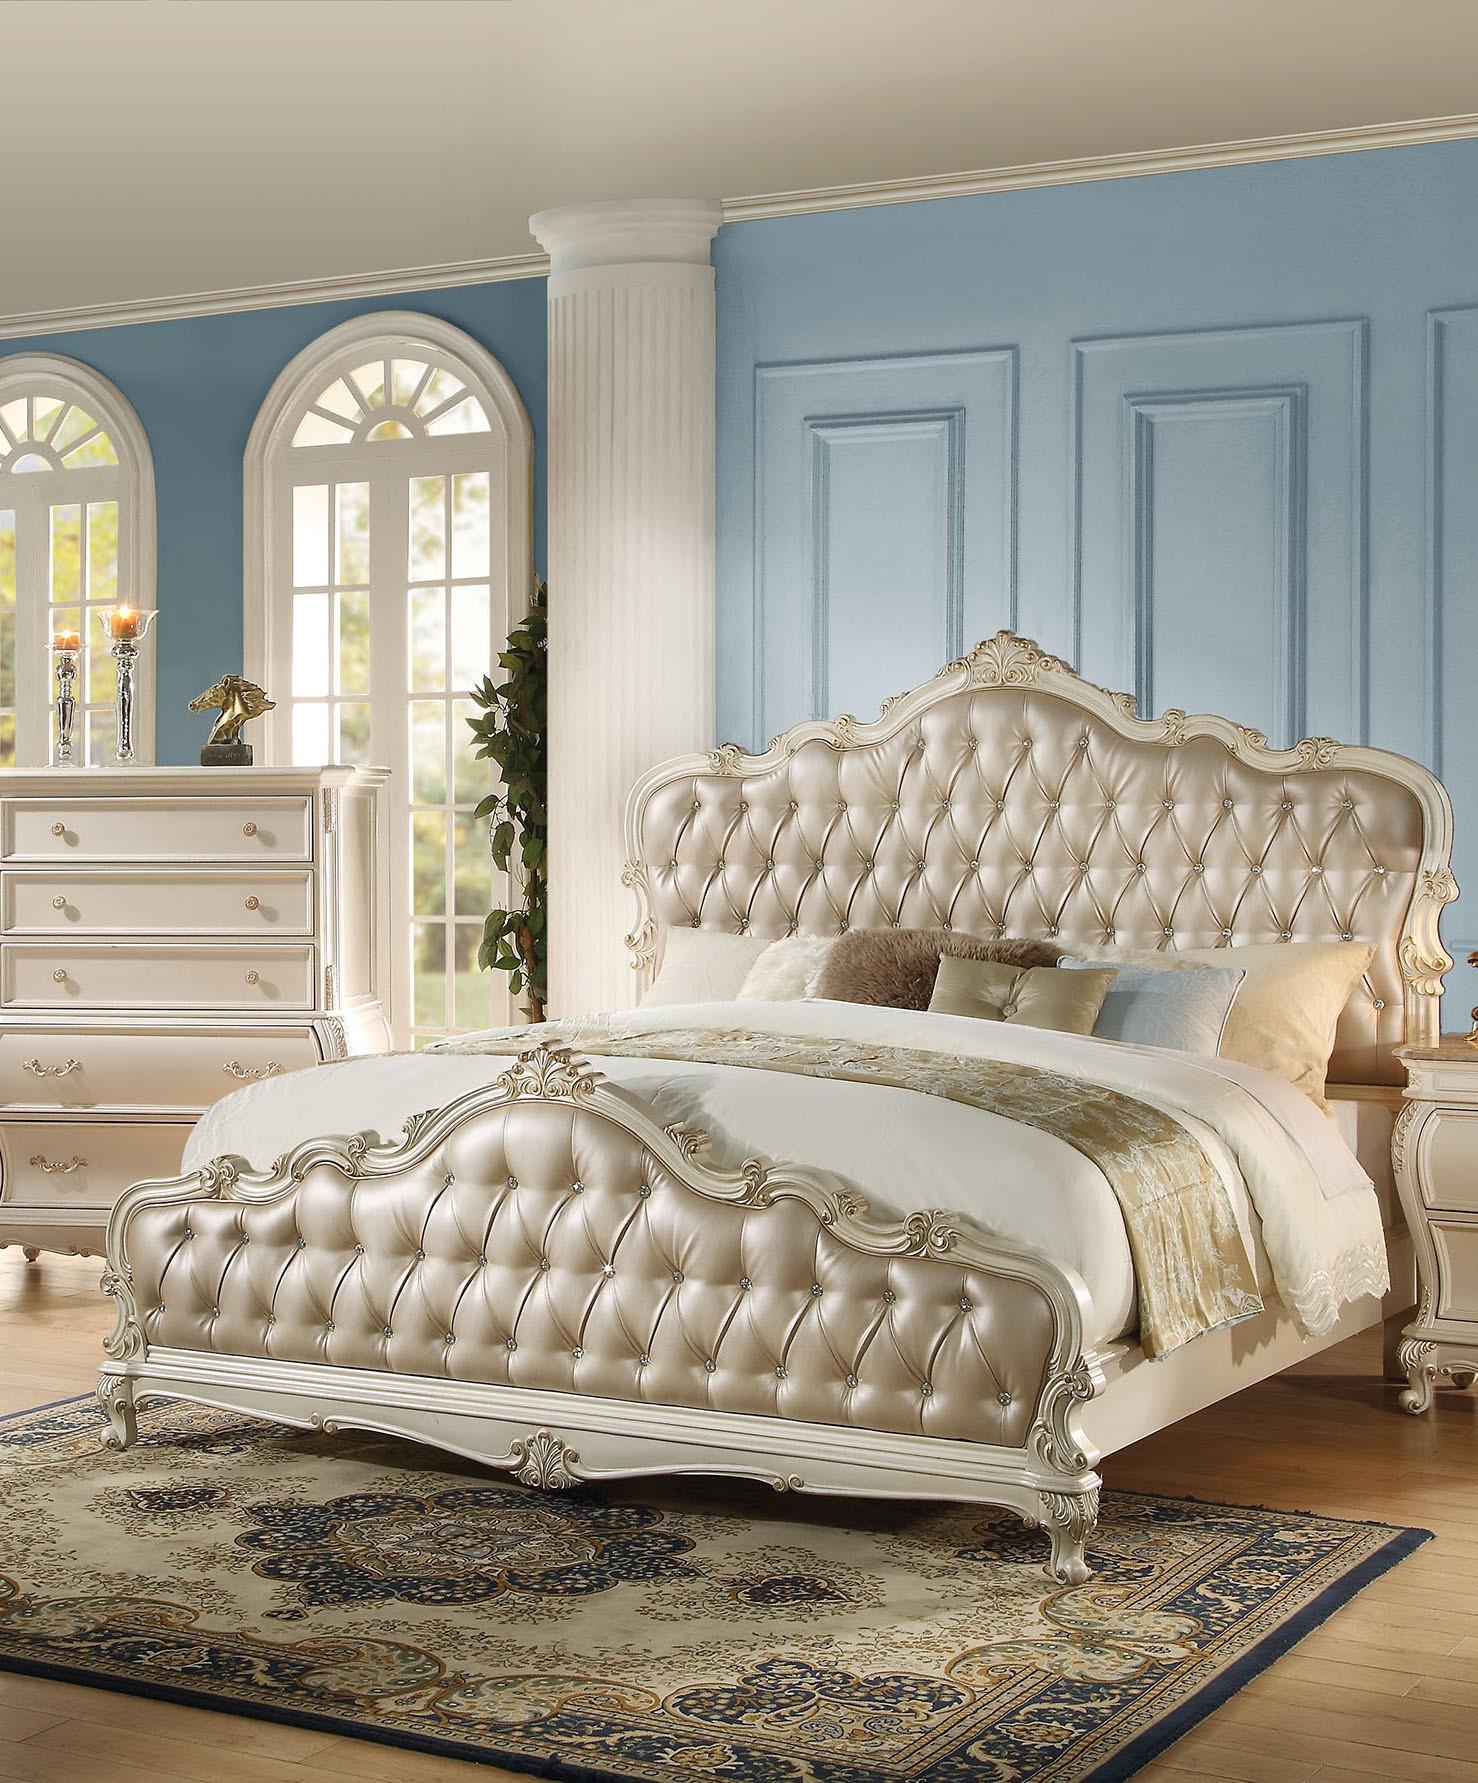 

    
Rose Gold Pearl White King Bedroom Set 3Pcs Chantelle 23537EK Acme Classic
